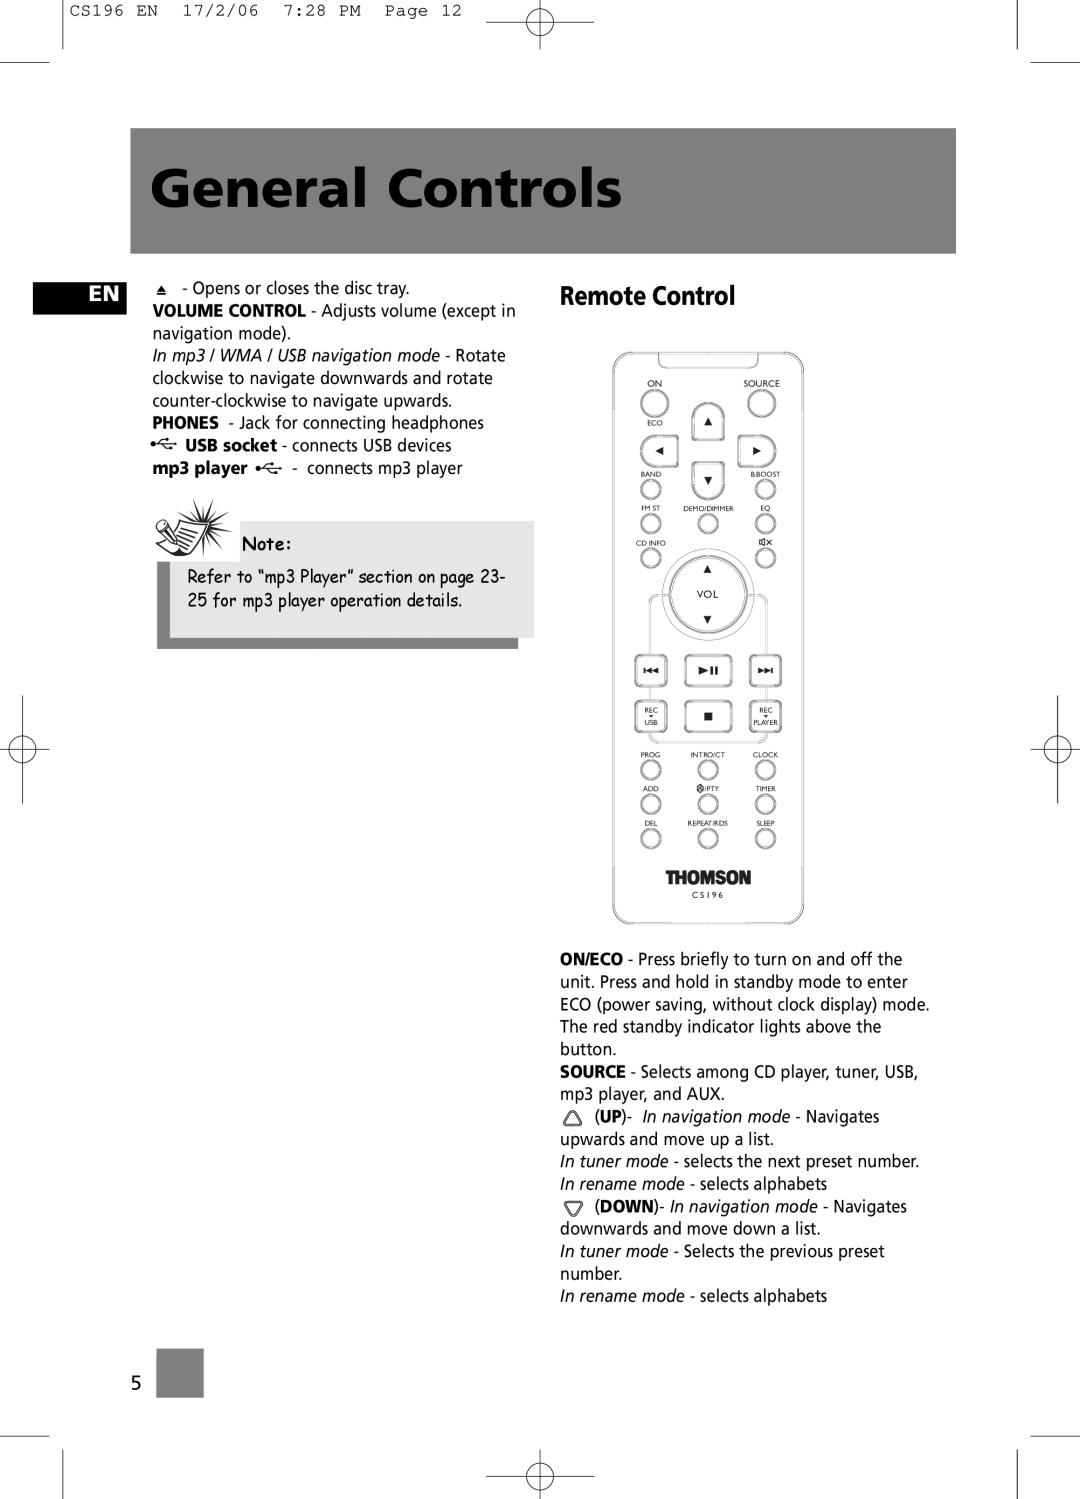 Technicolor - Thomson CS196 user manual Remote Control, General Controls, mp3 player 